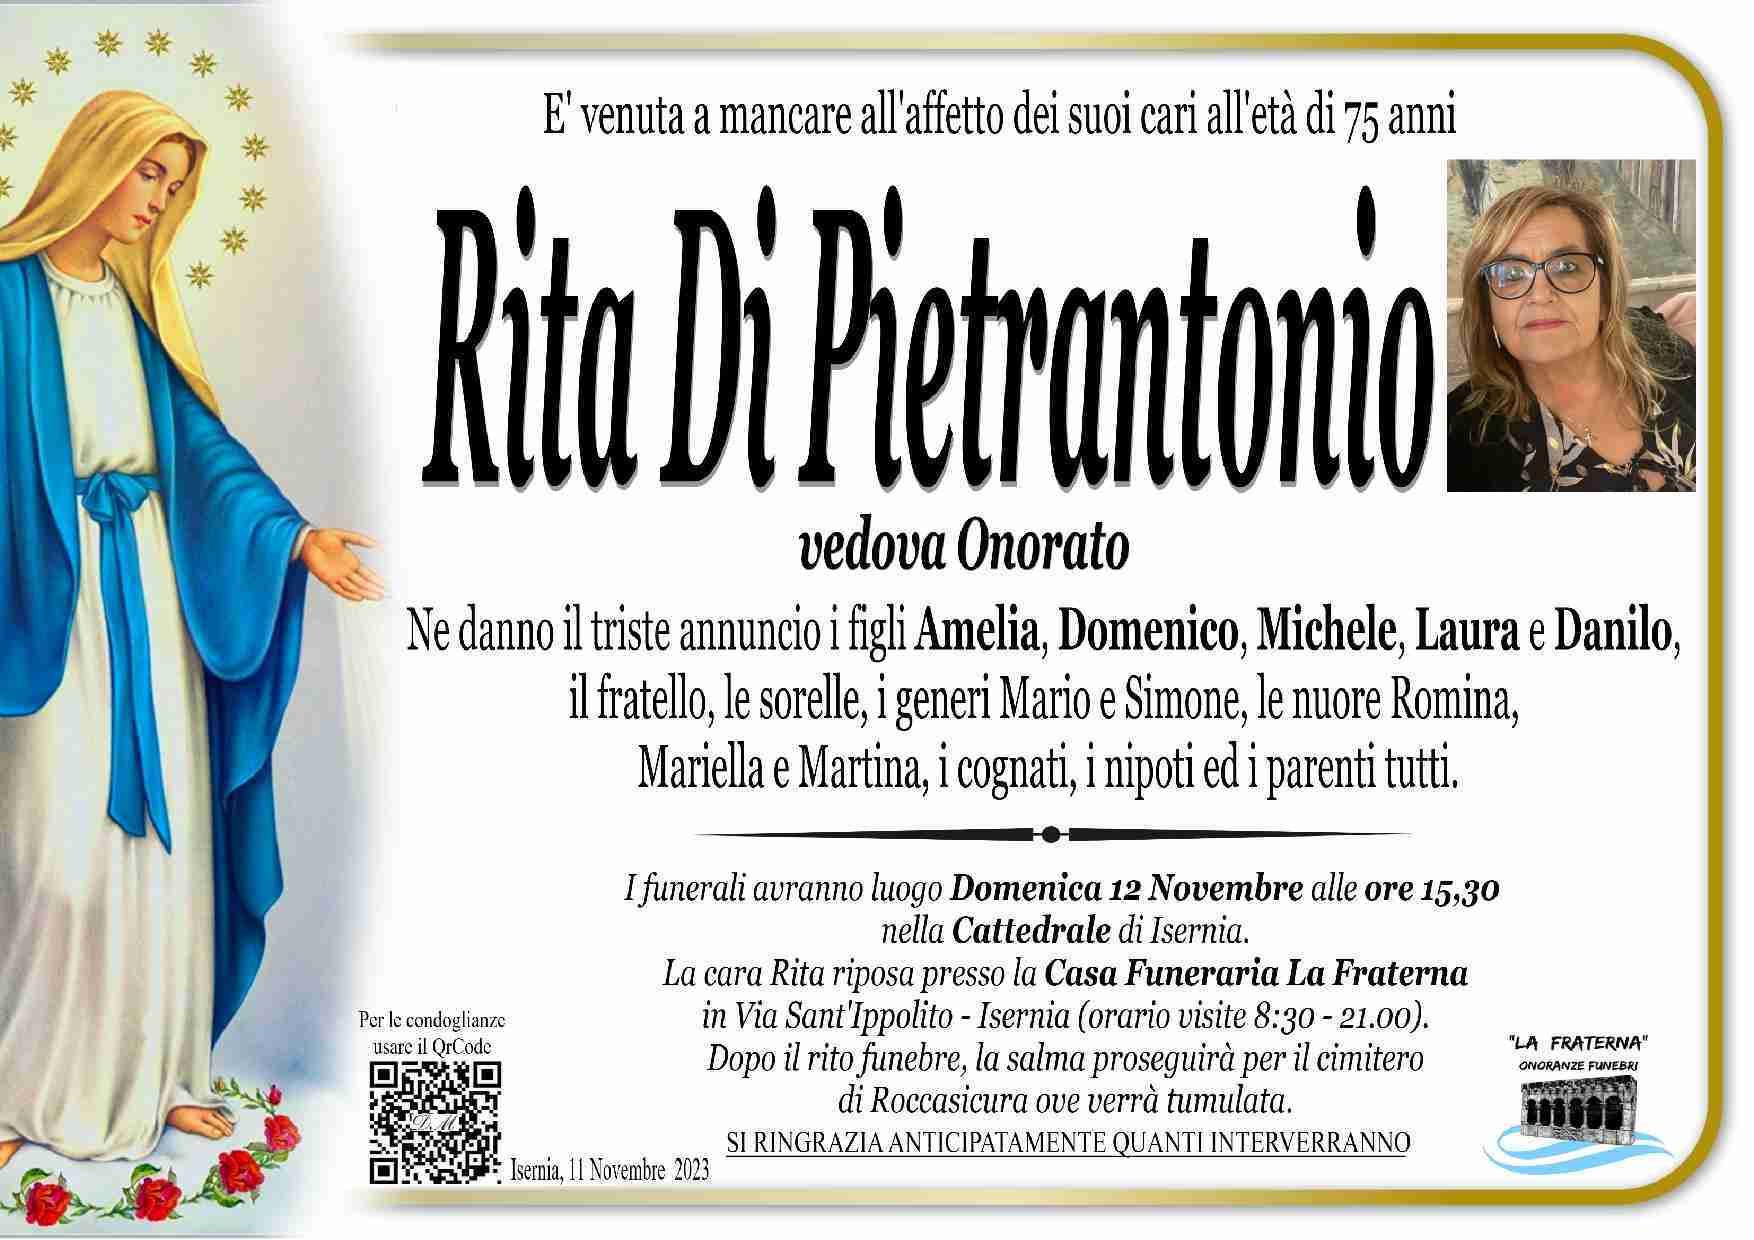 Rita di Pietrantonio